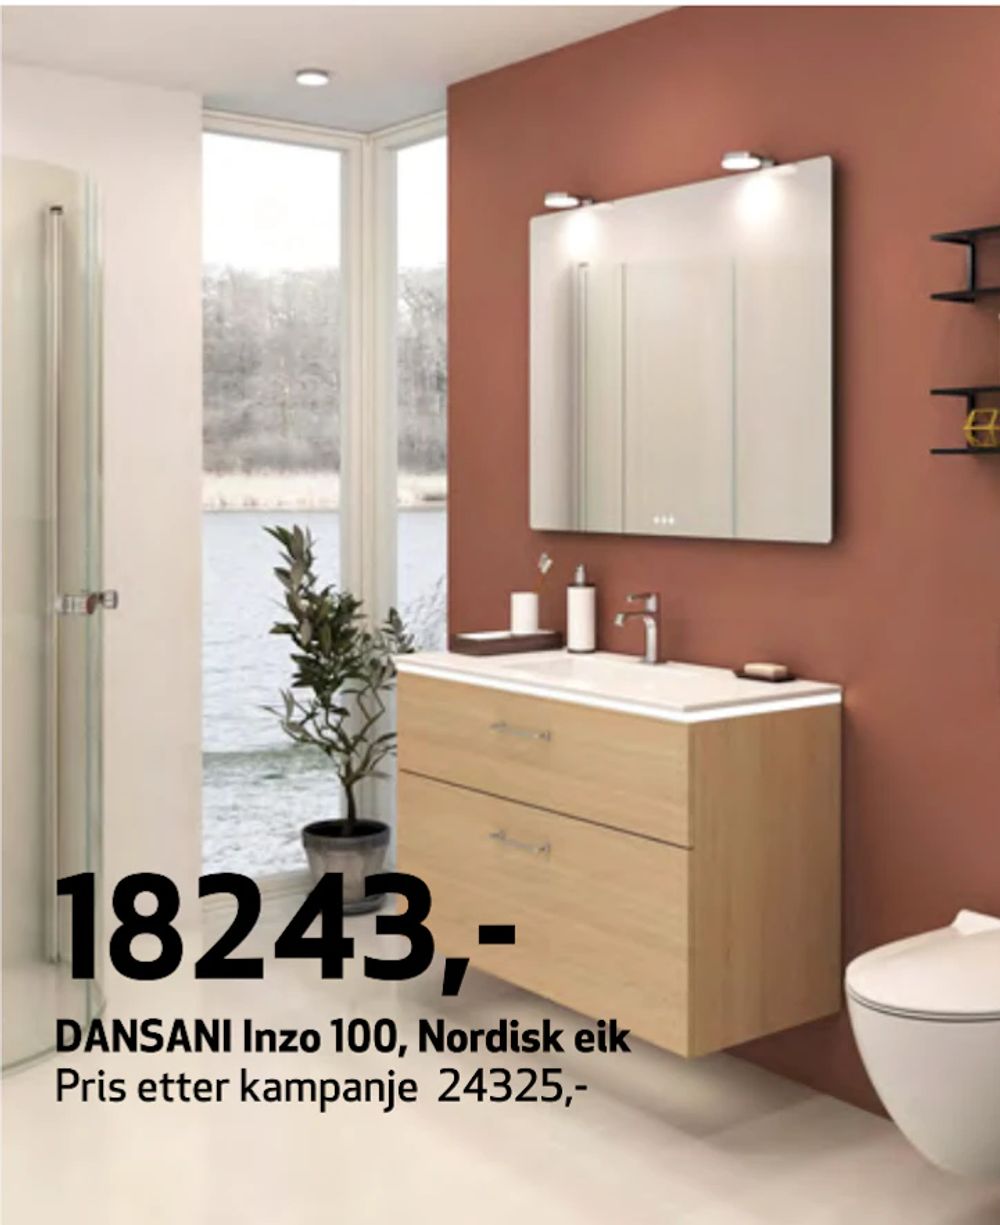 Tilbud på DANSANI Inzo 100, Nordisk eik fra Flisekompaniet til 18 243 kr